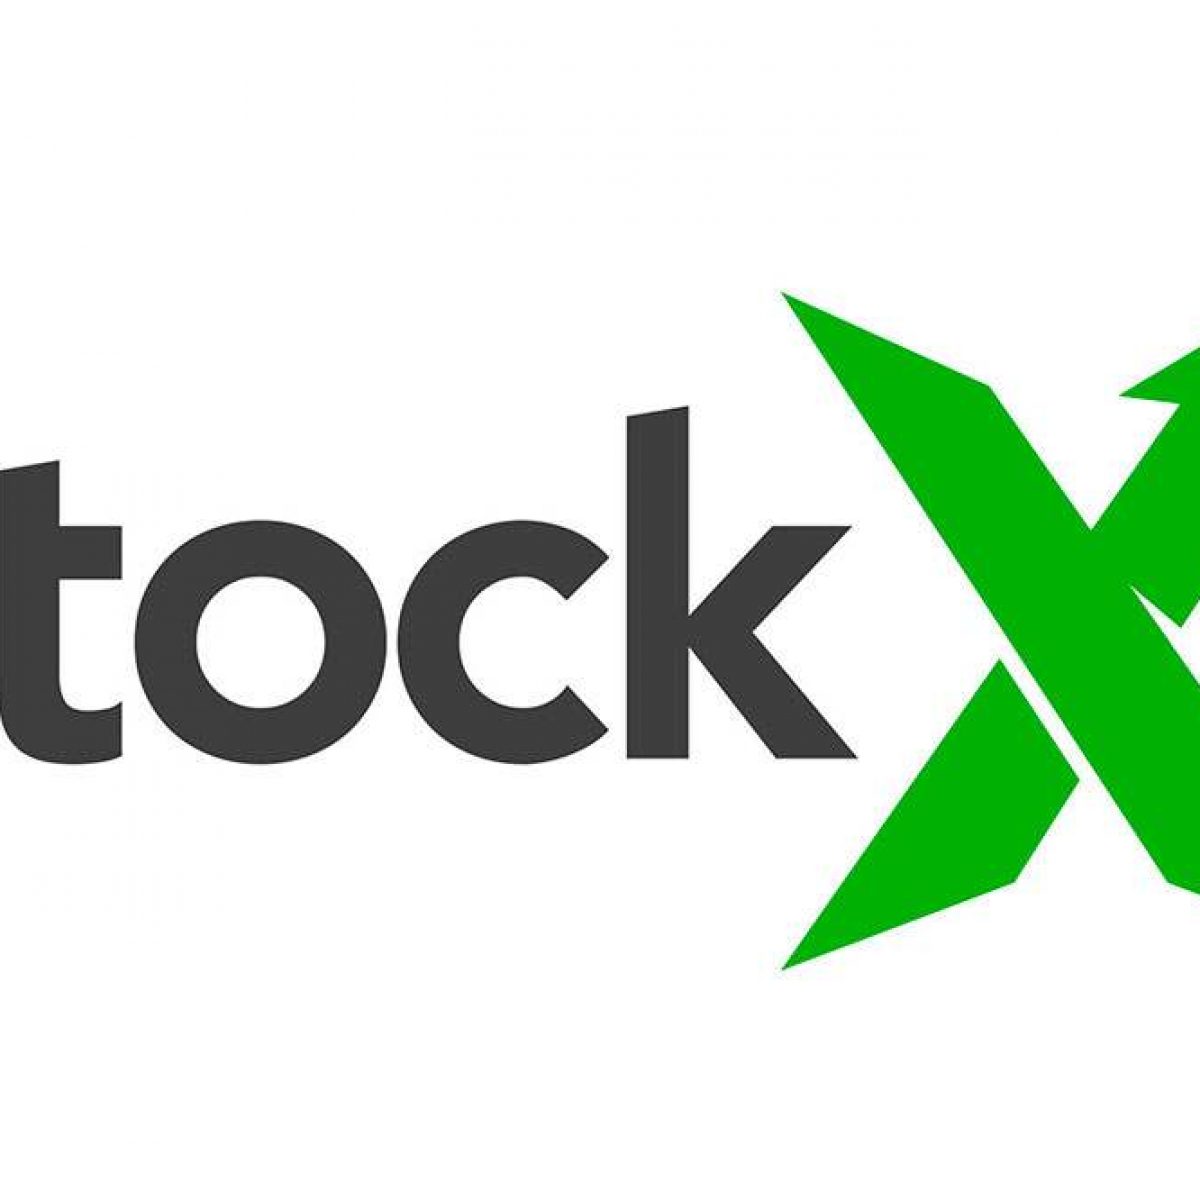 stockx verification tag｜TikTok Search